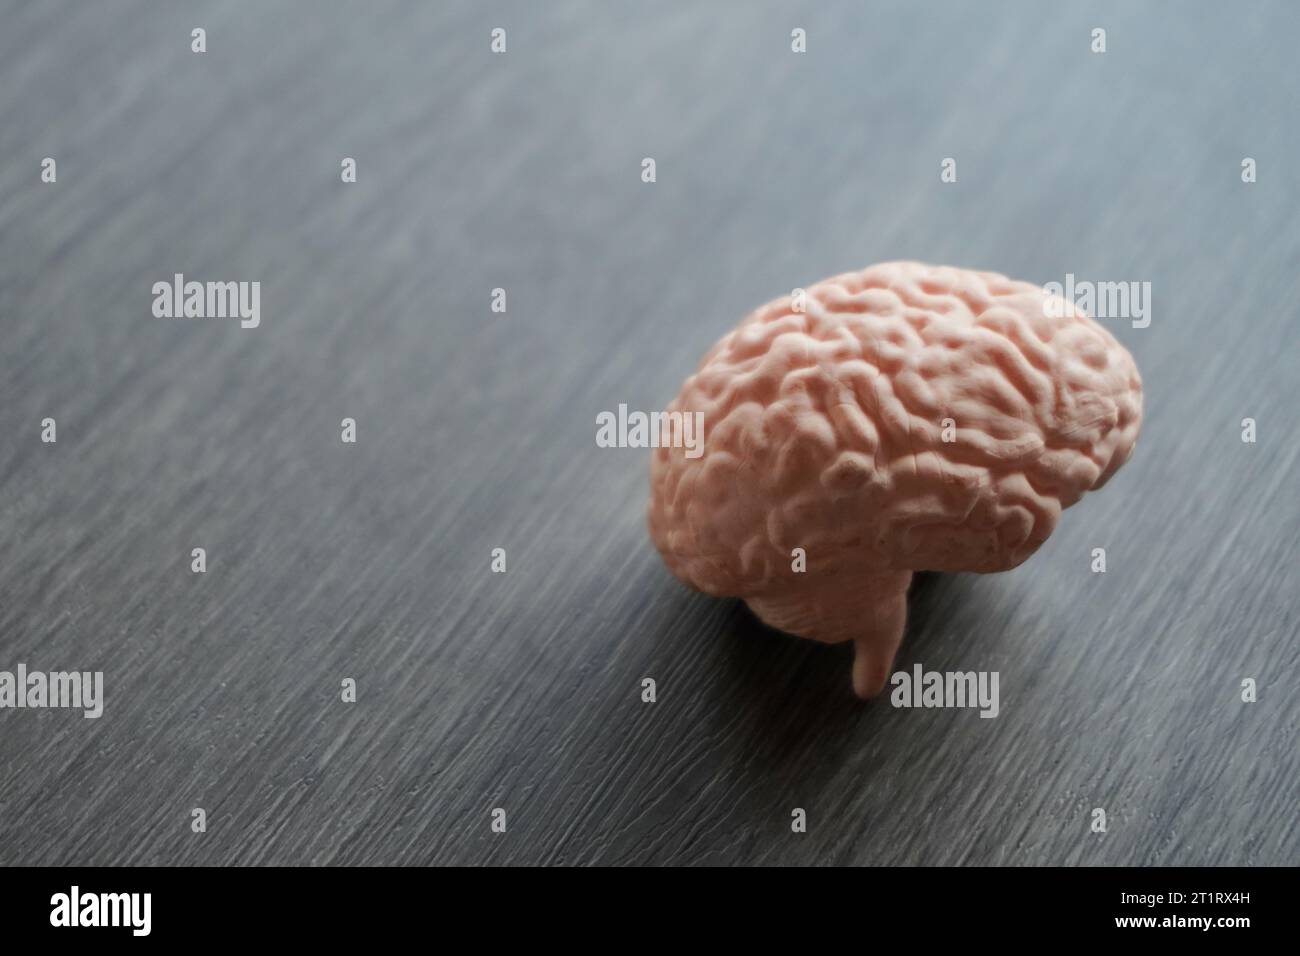 Immagine ravvicinata del modello del cervello umano. Il cervello è liscio e grigio, con i diversi lobi e gyri chiaramente visibili. Concetto medico e sanitario. Foto Stock